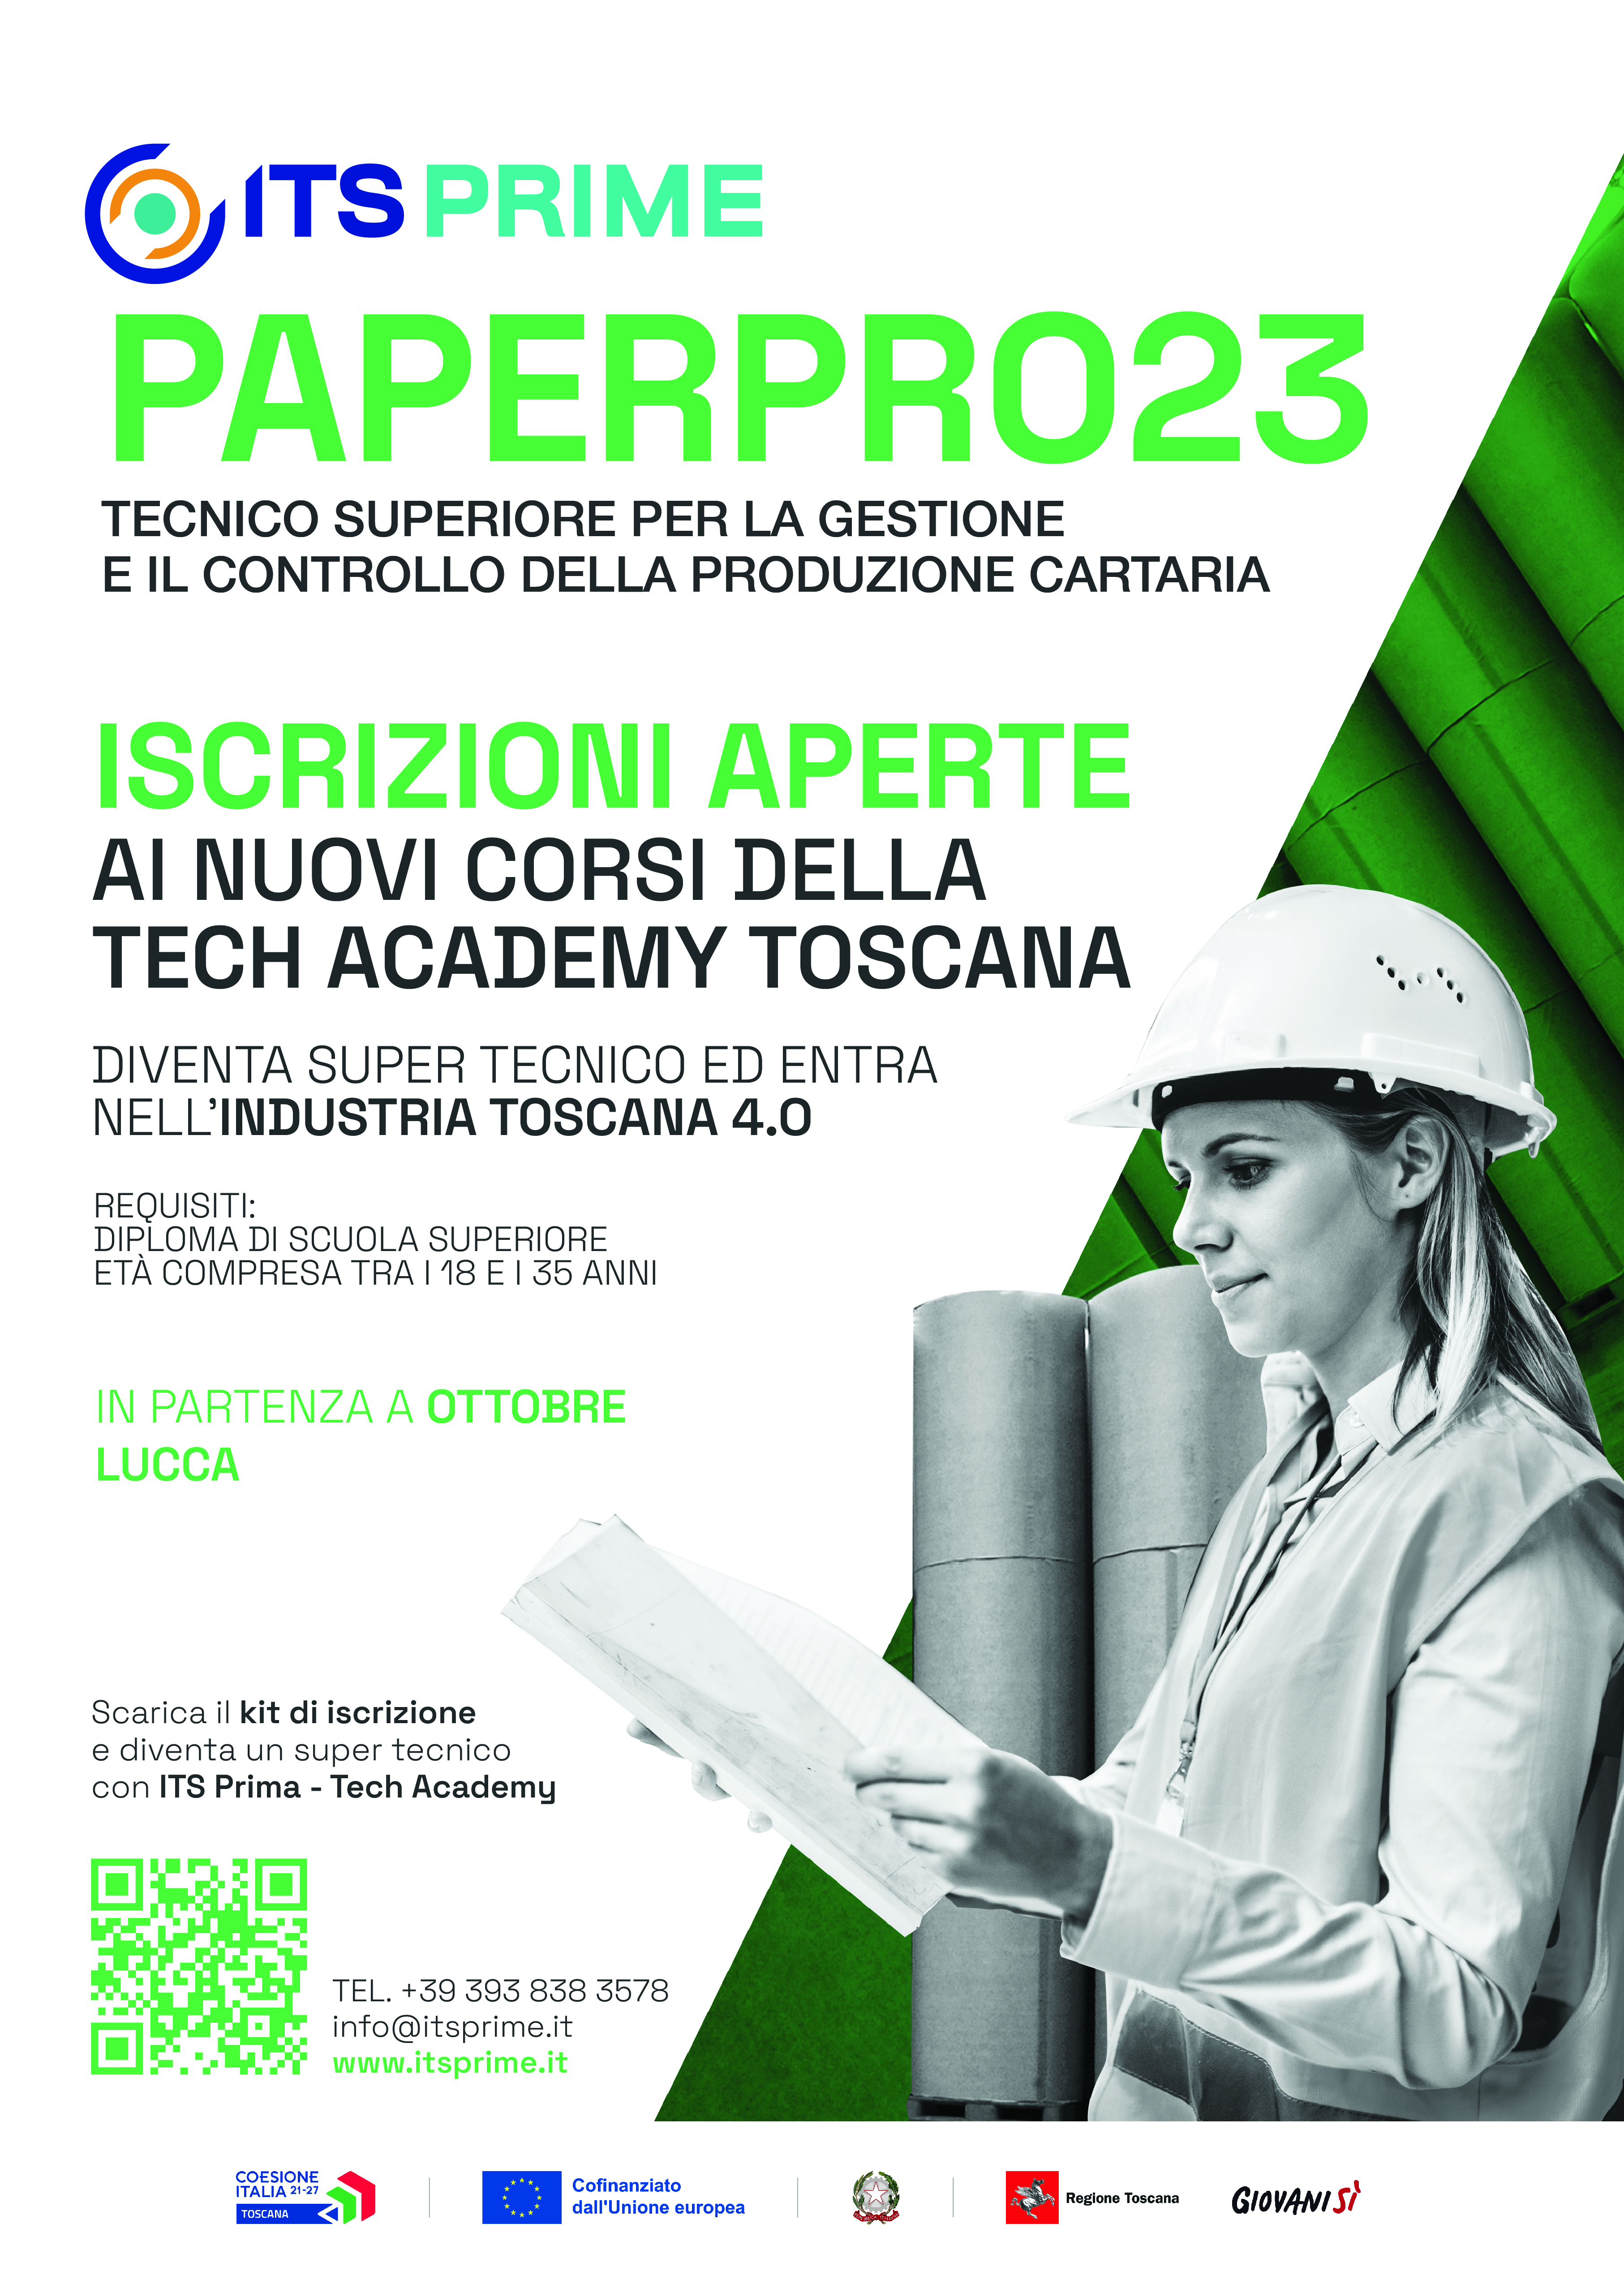 PaperPro23 – Tecnico superiore per la gestione e il controllo della produzione cartaria